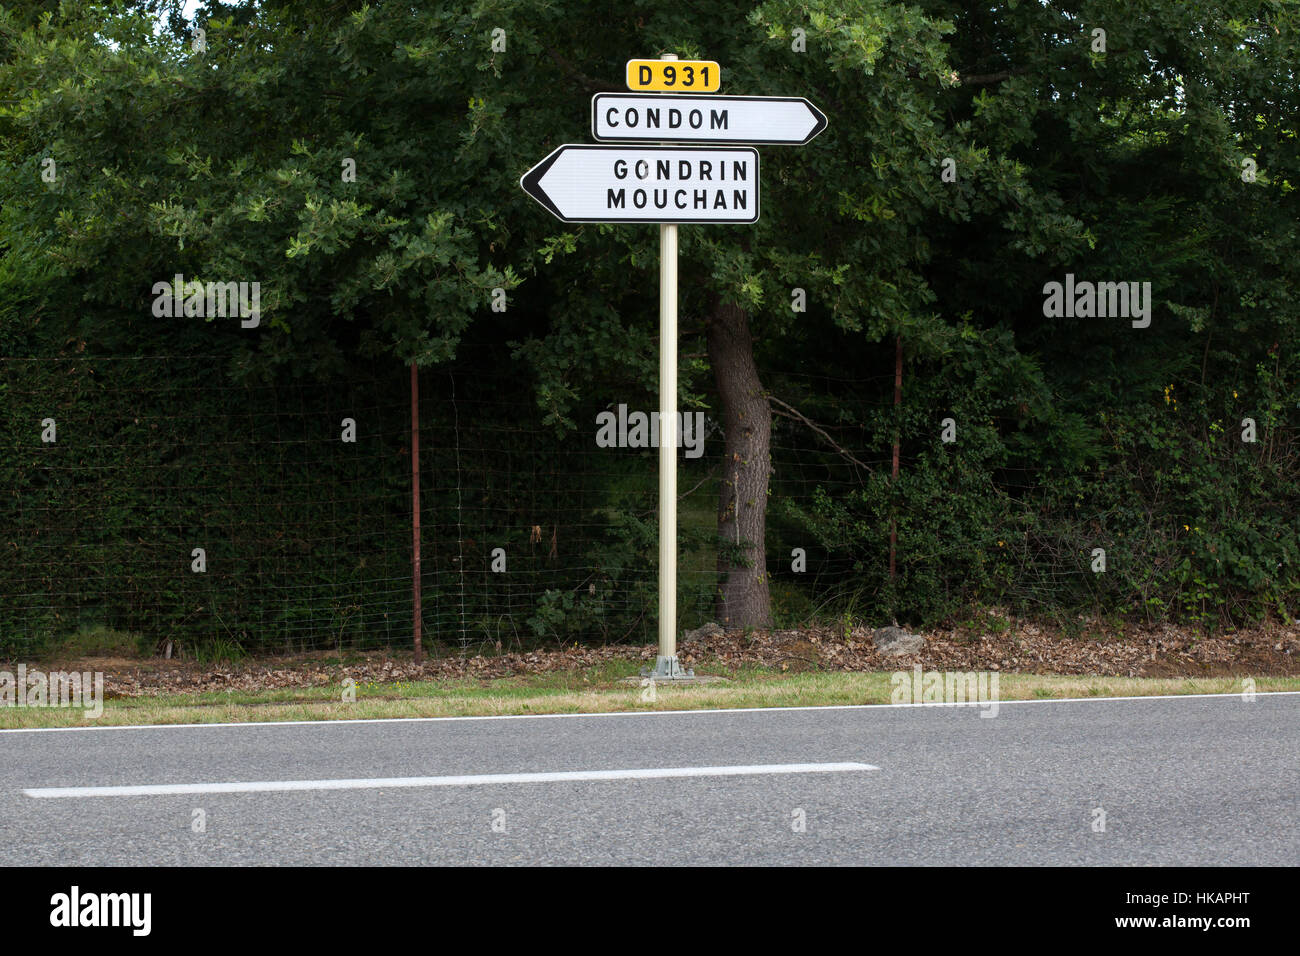 Direzione segno di traffico a Condom e di Gondrin e Mouchan accanto alla città di Condom nel Gers, Francia. Foto Stock